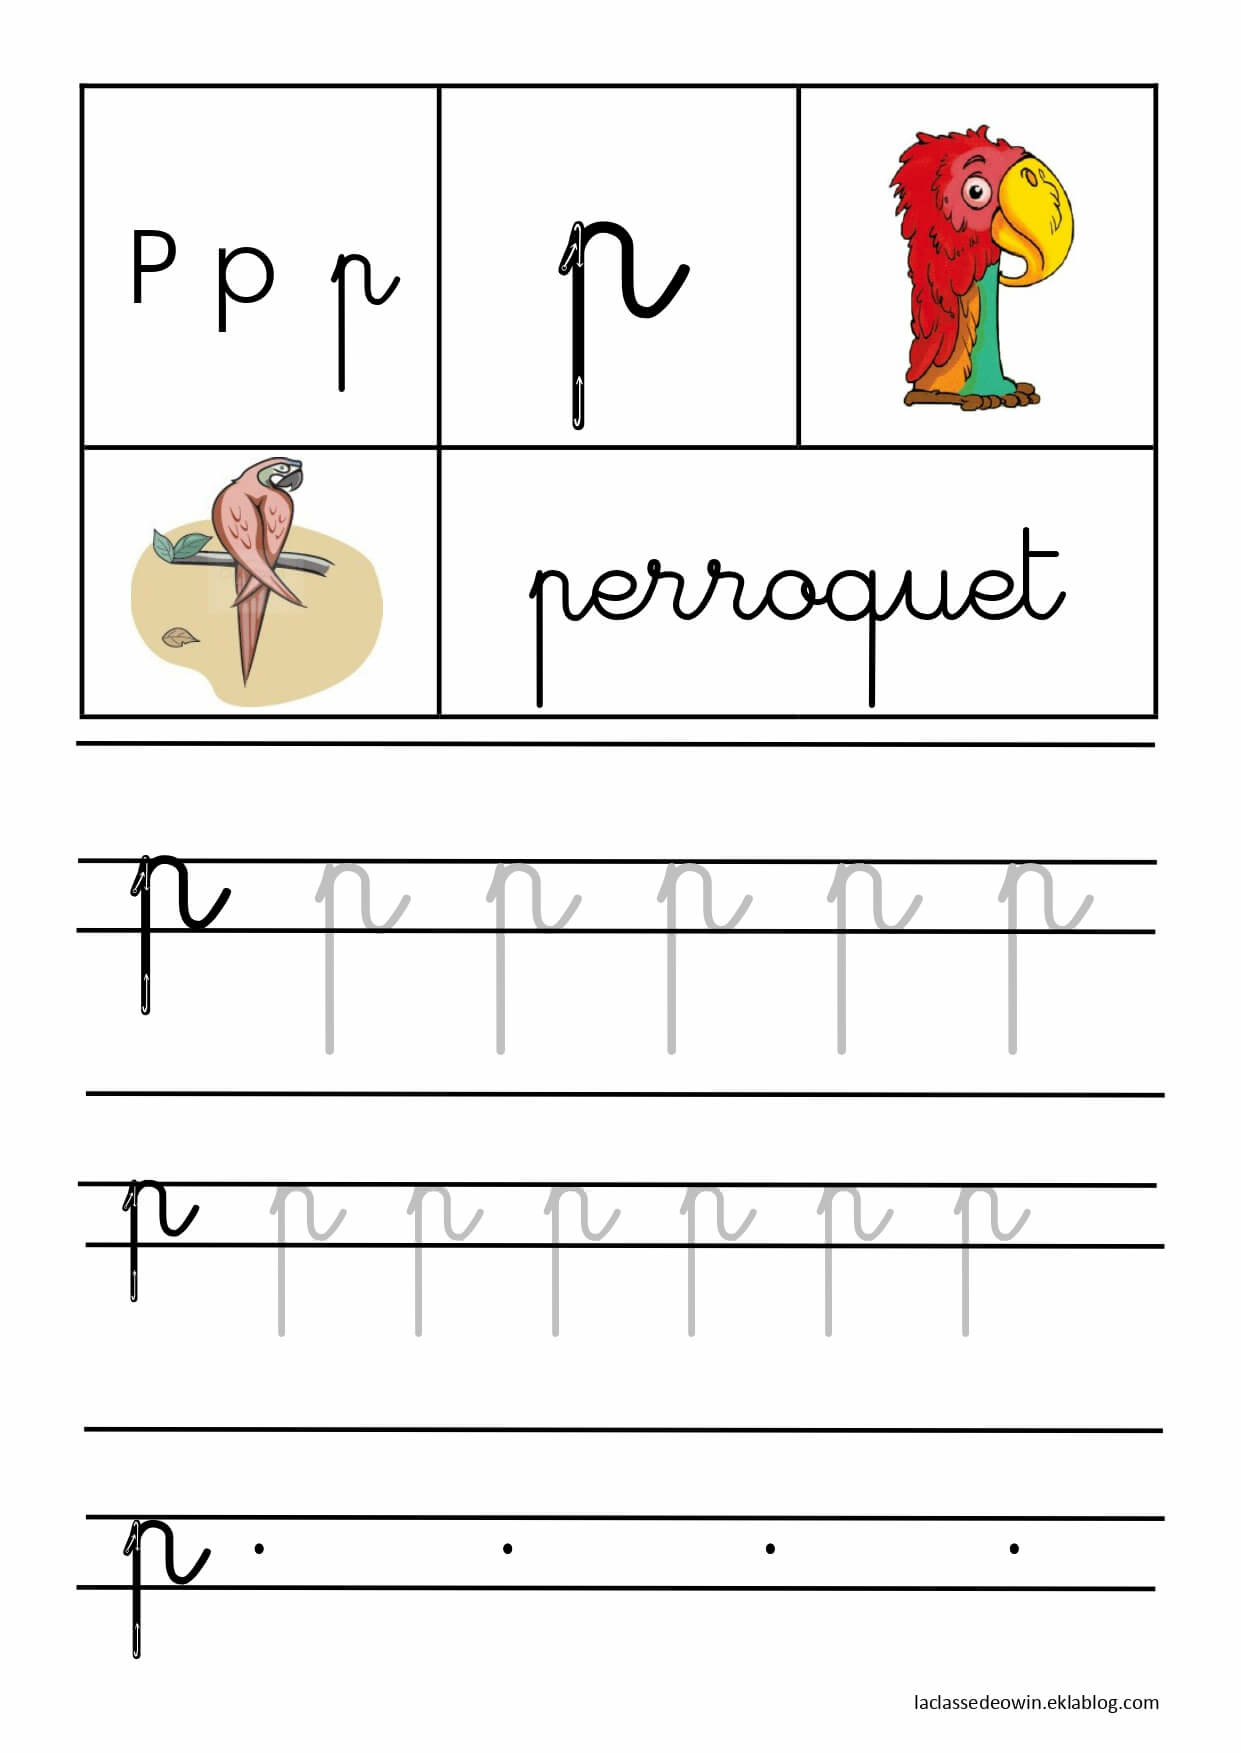   Lettre P pour perroquet, écriture cursive GS 